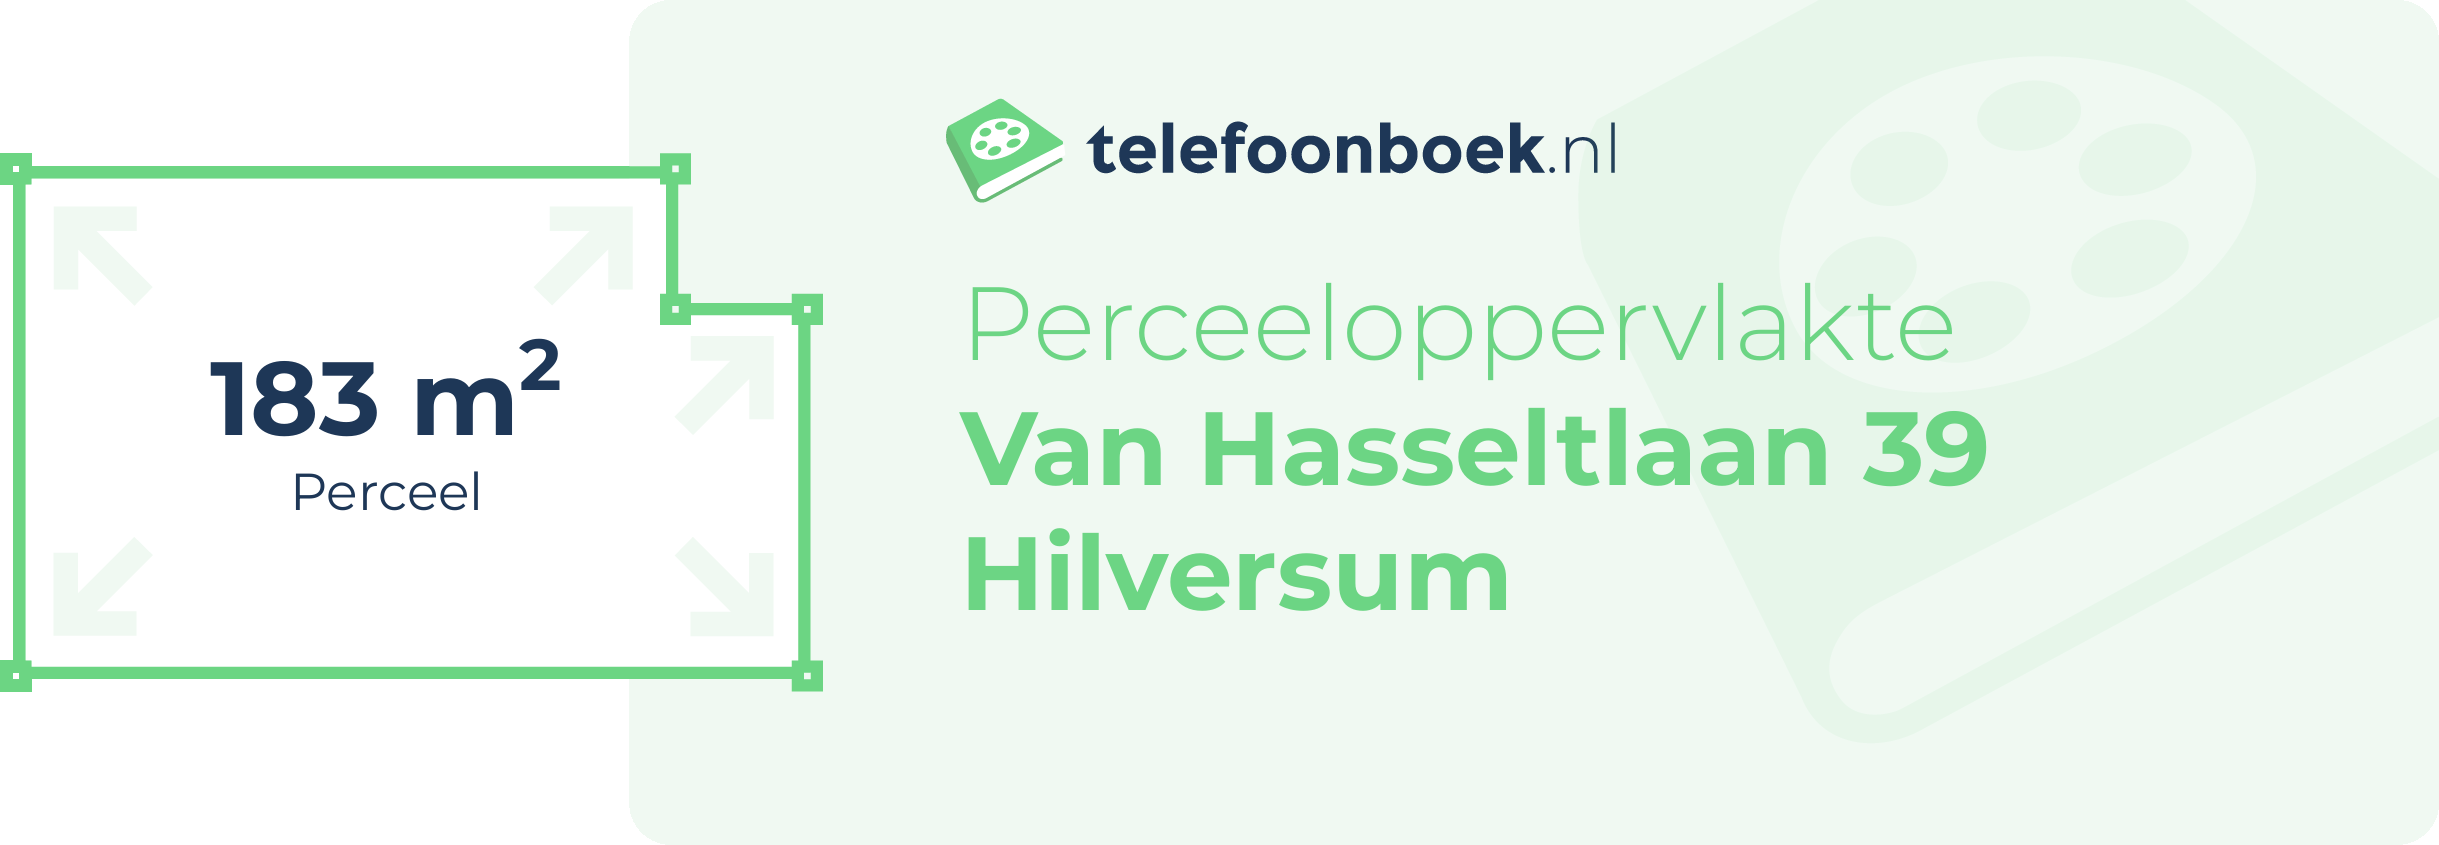 Perceeloppervlakte Van Hasseltlaan 39 Hilversum